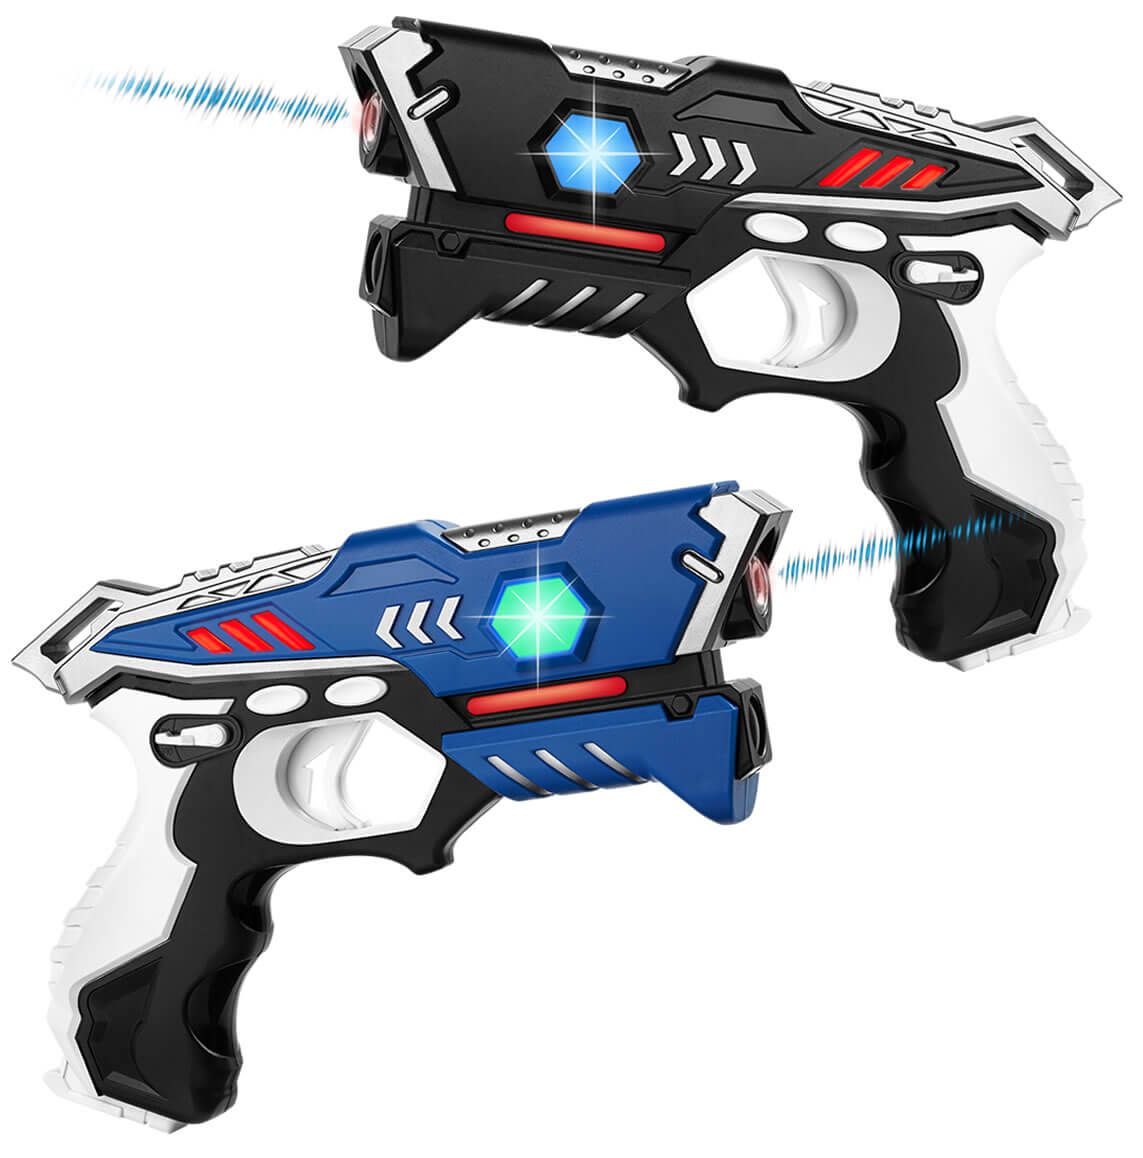 Vertrappen extract grip KidsTag Lasergame set - 2 Laserpistolen voor kinderen